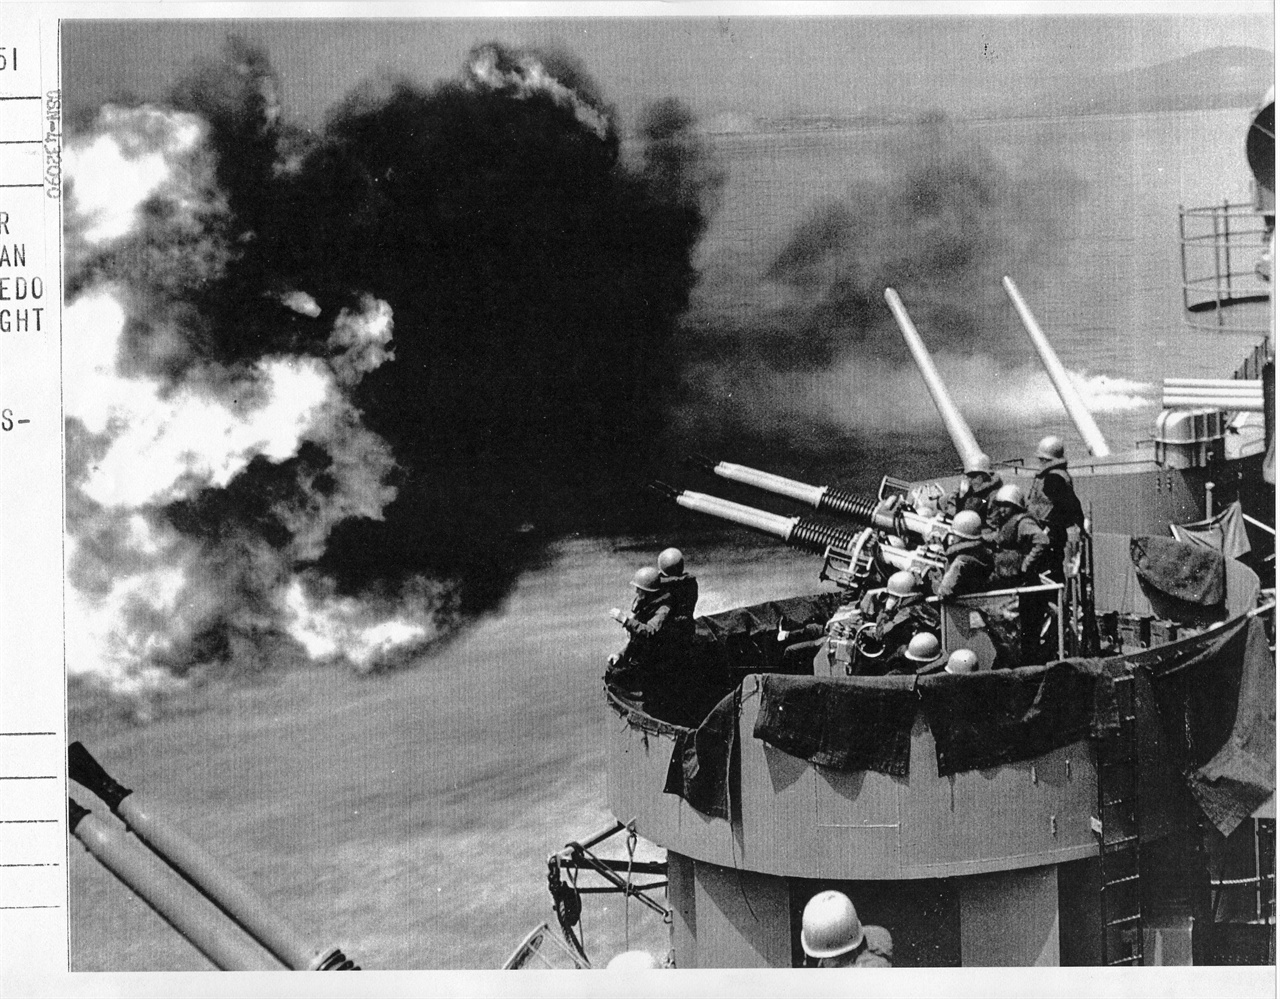 1951. 7. 22. 청진, 미 군함이 동해에서 북한진지를 향해 맹렬히 함포 사격하고 있다.